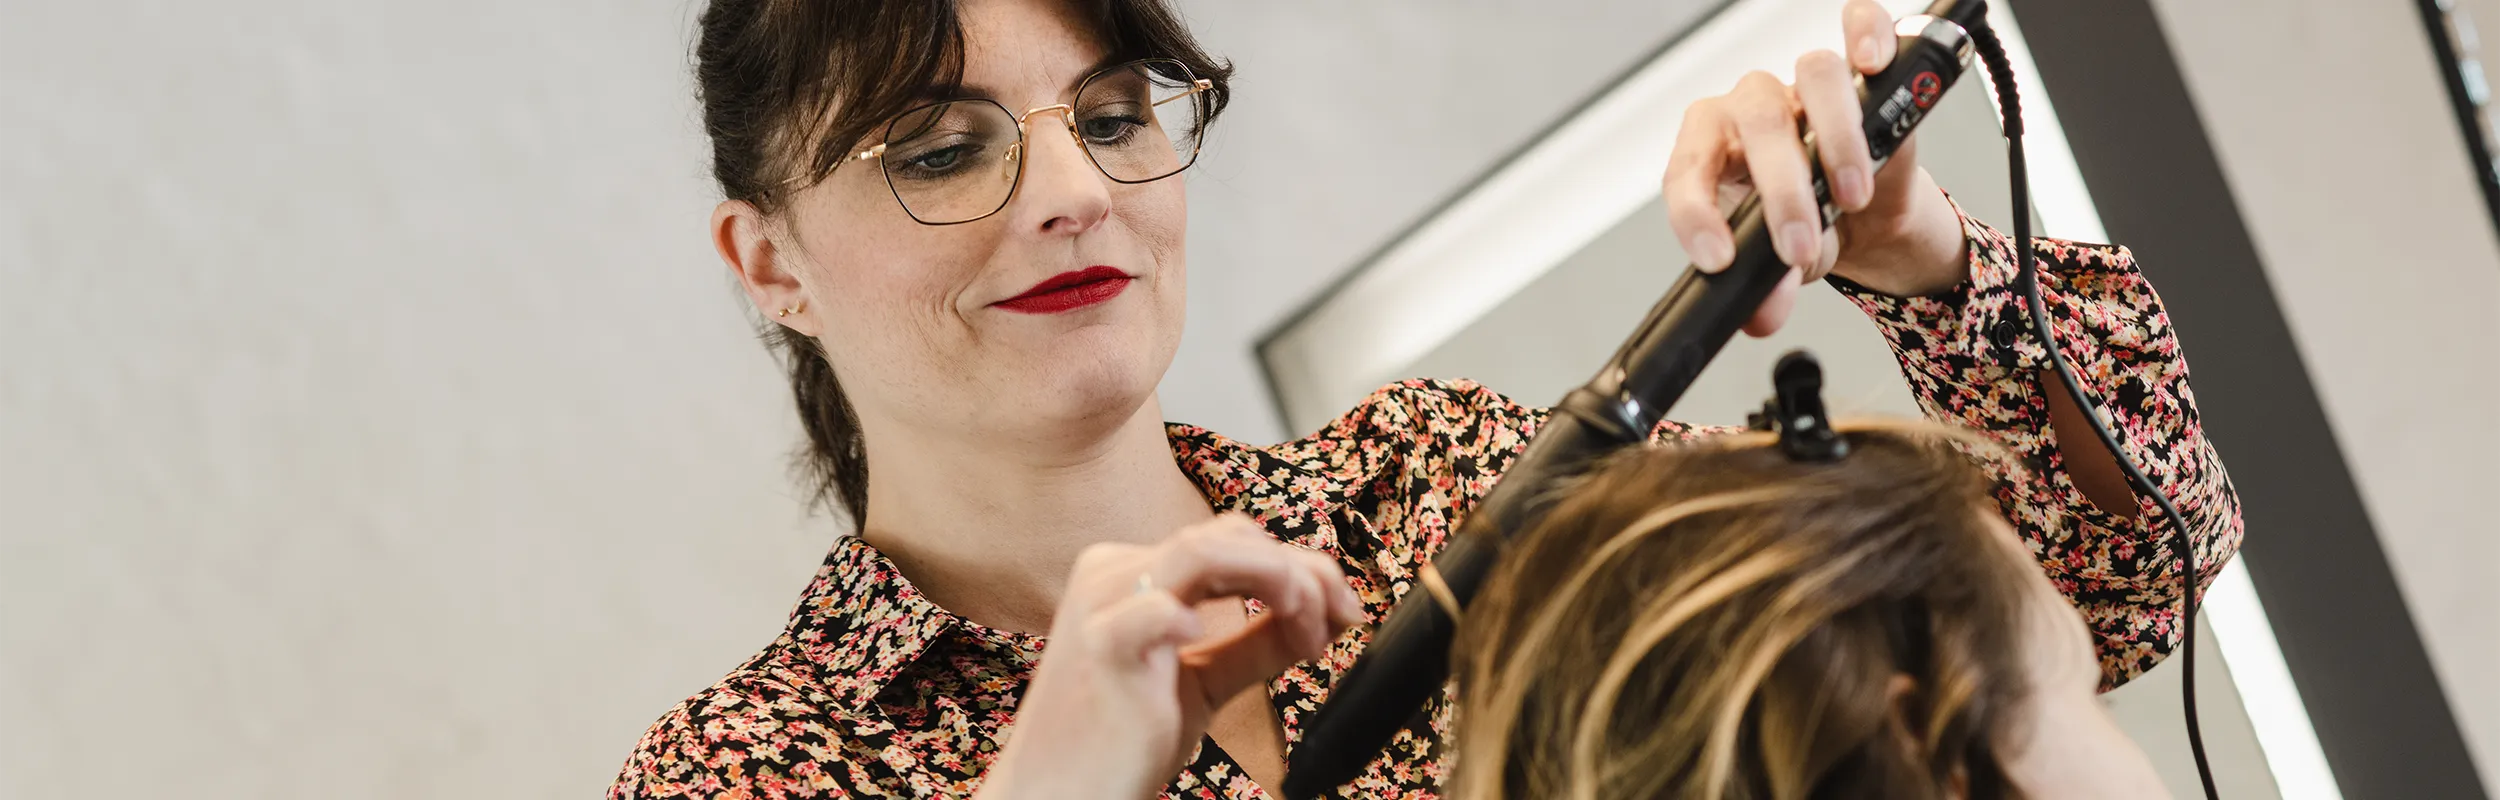 Haarstyling bei Atelier Hauptsache in Heilgenhaus: Balayage für einen schönen Verlauf im Haar